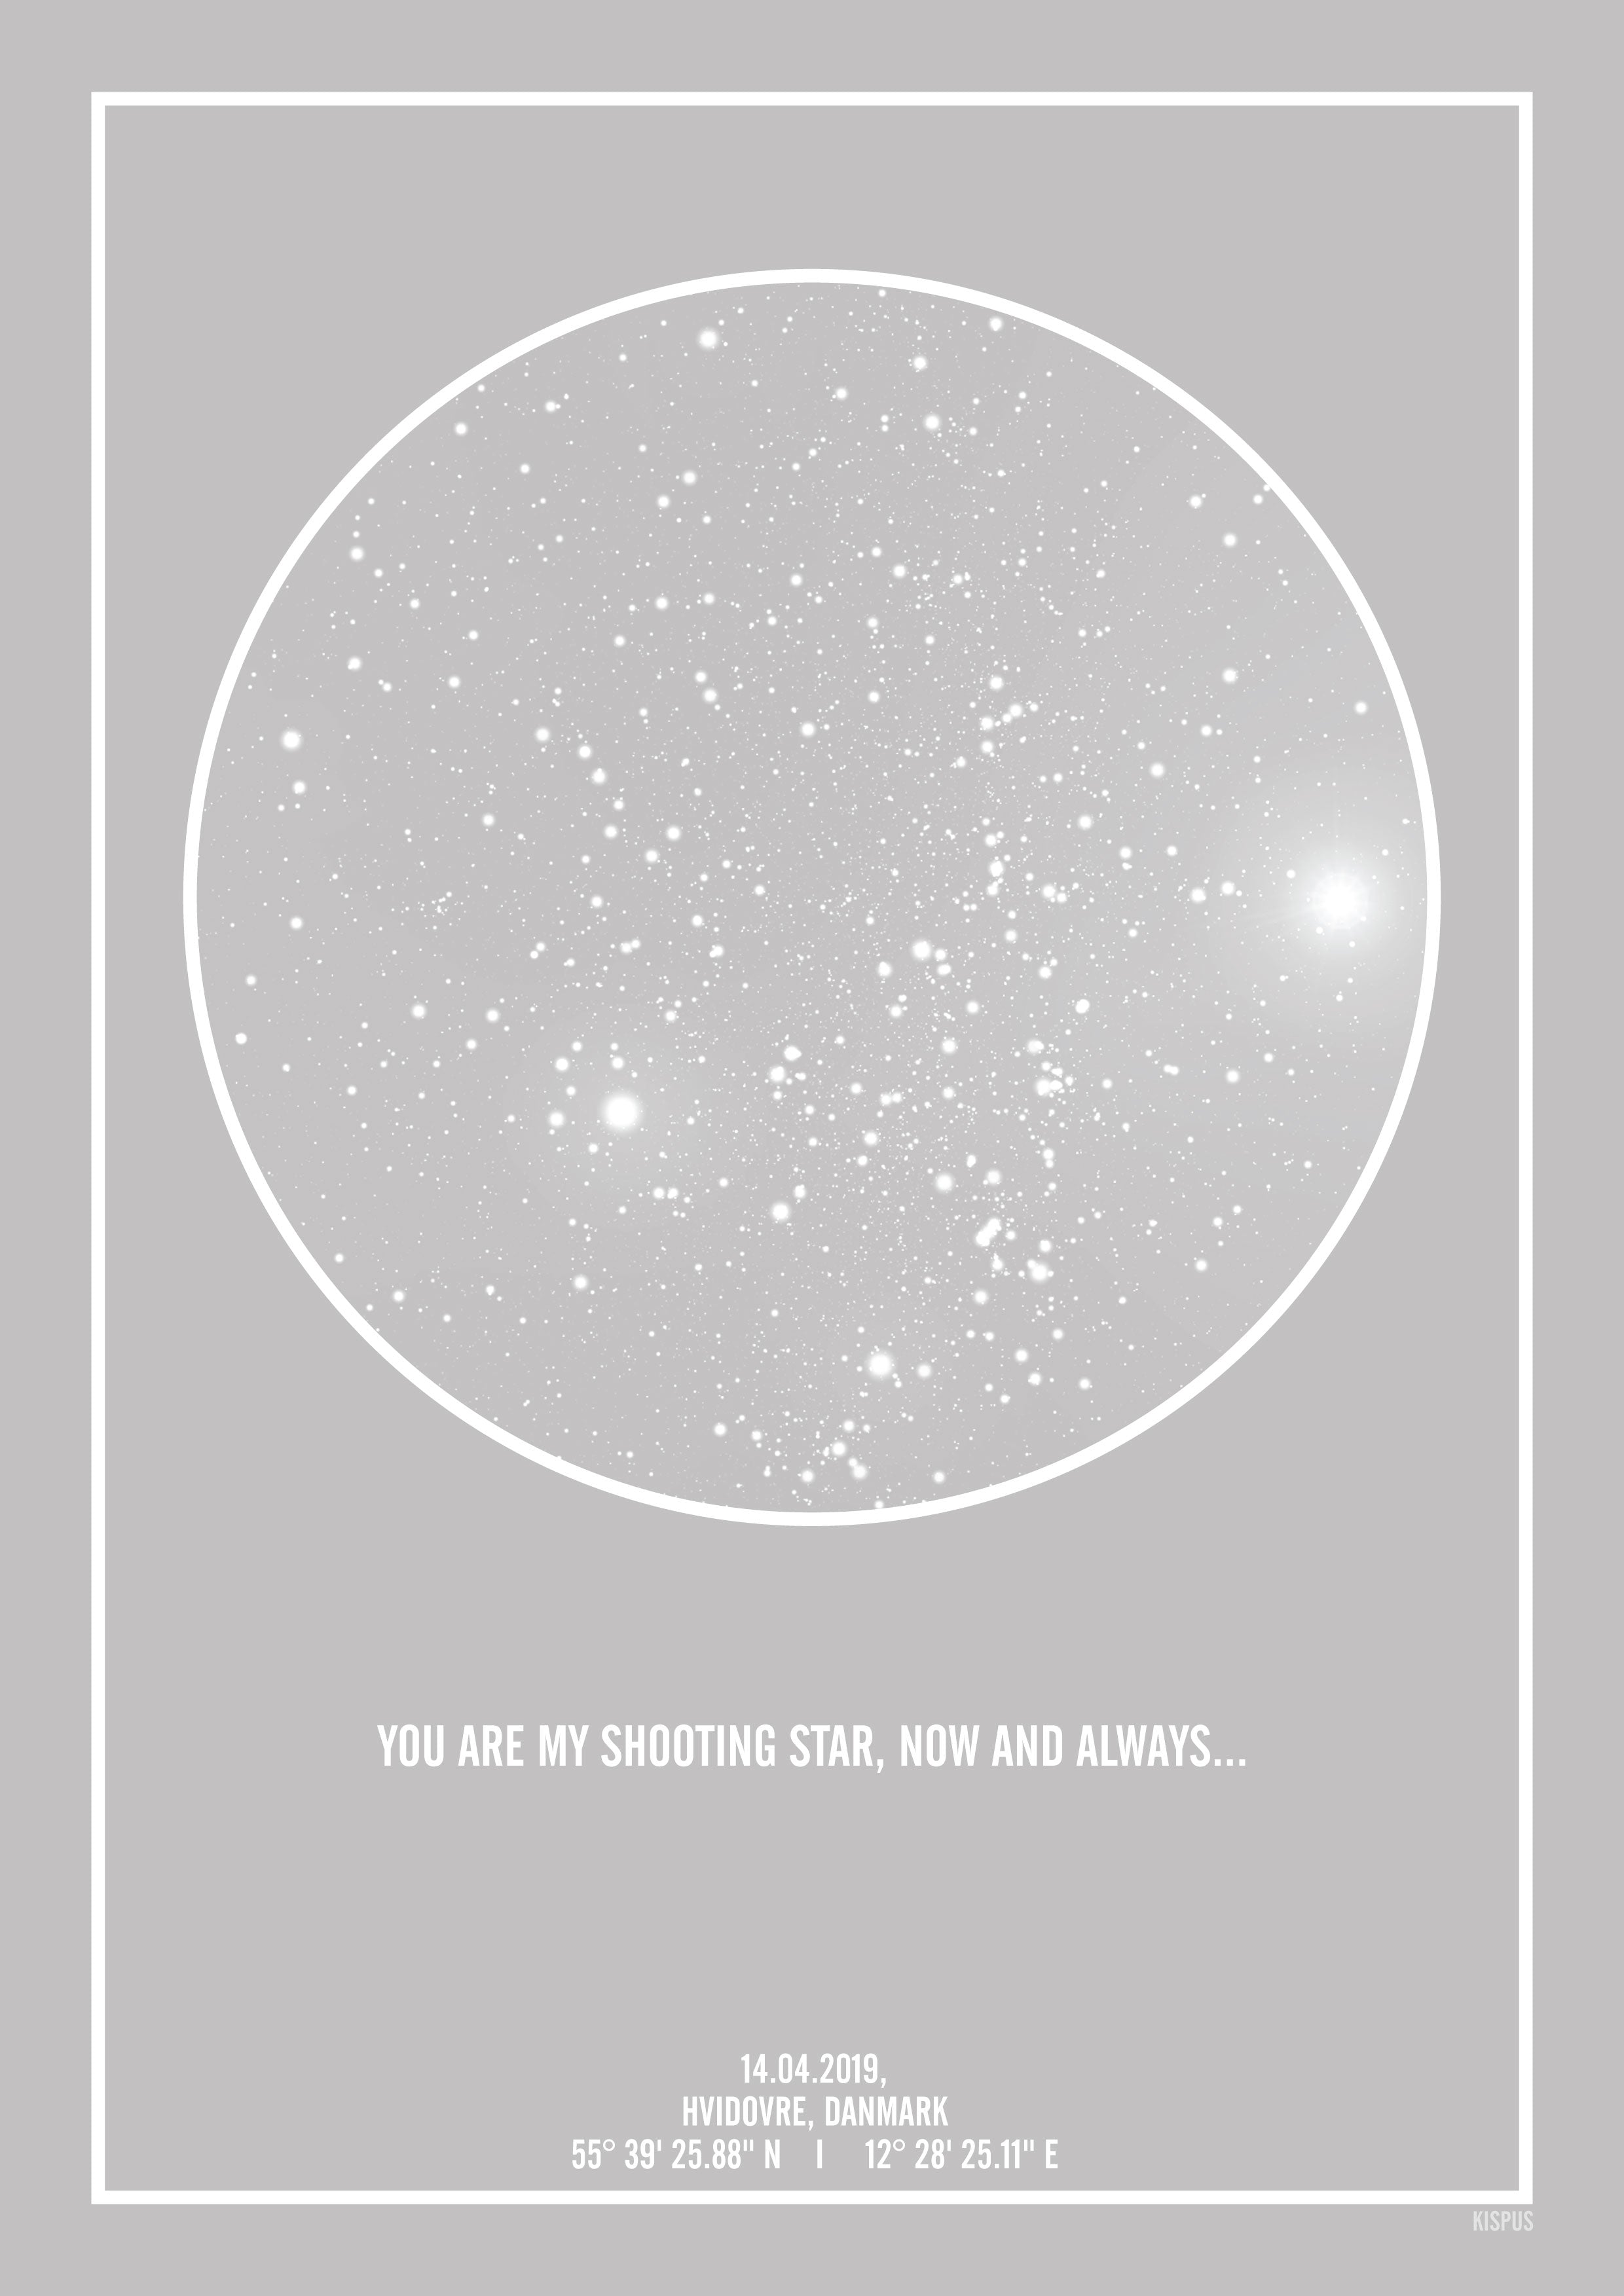 Se PERSONLIG STJERNEHIMMEL PLAKAT (LYSEGRÅ) - 30x40 / Hvid tekst + grå stjernehimmel / Klar stjernehimmel hos KISPUS